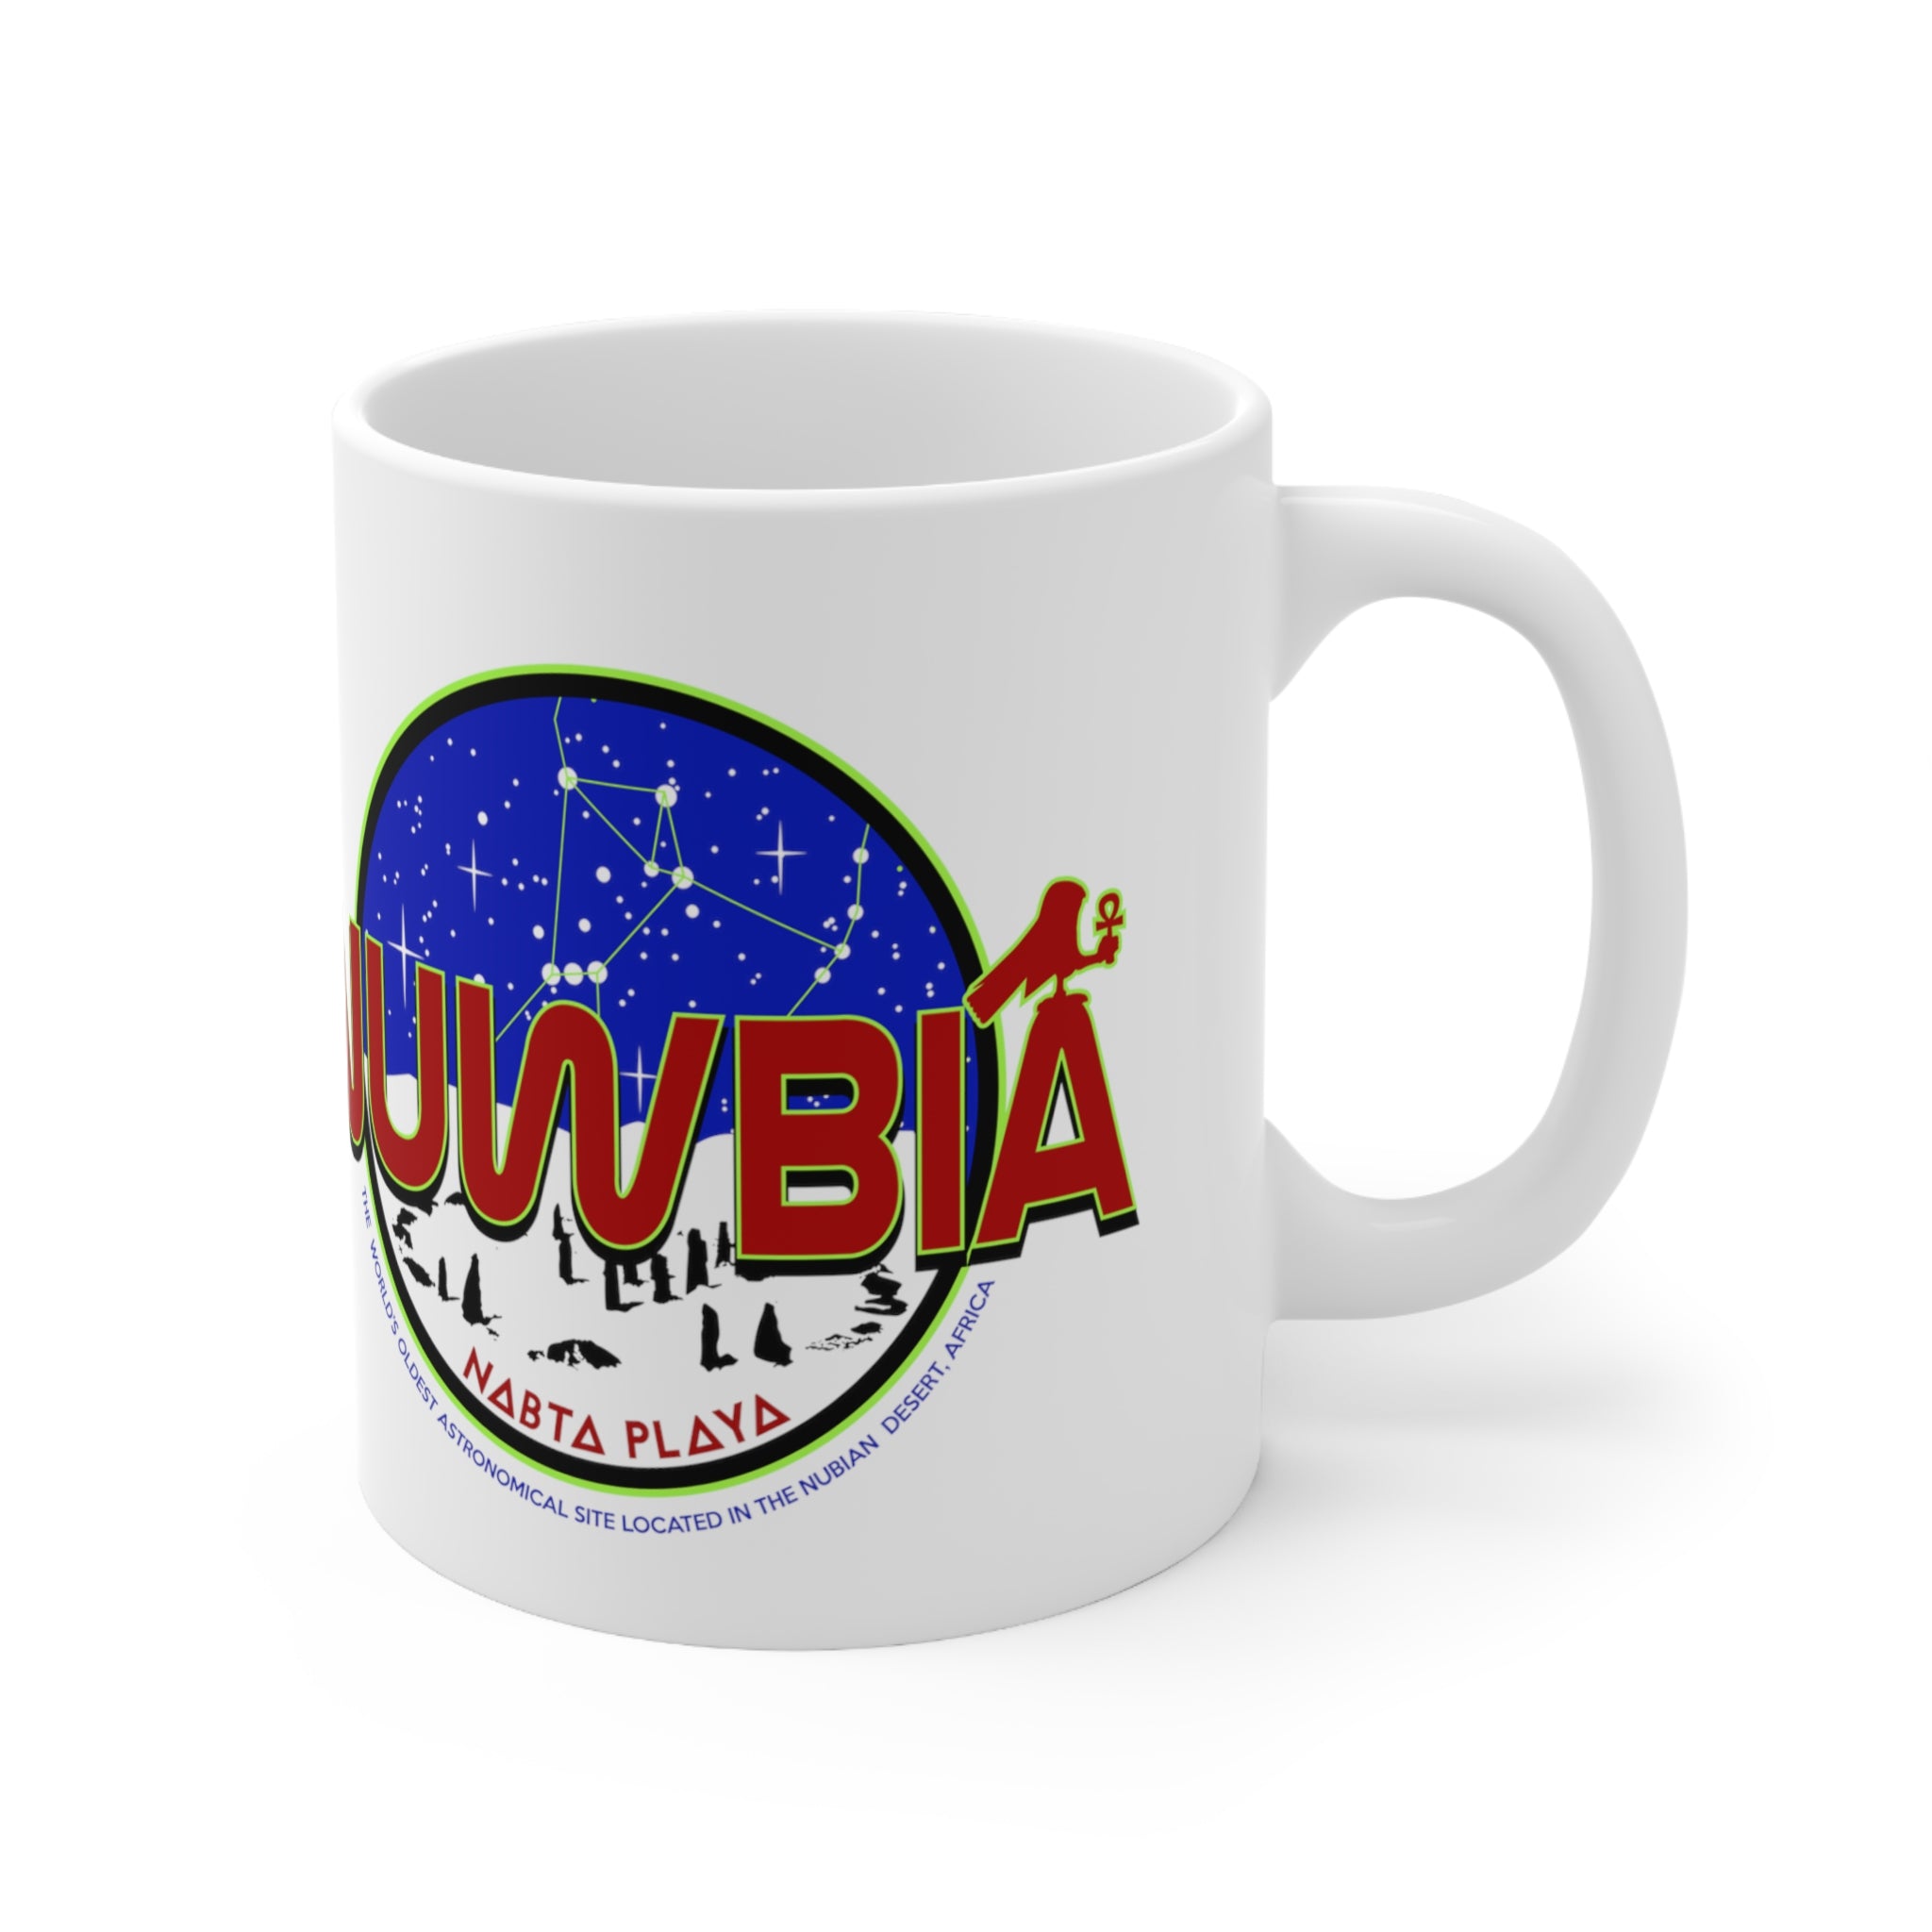 Nuwbia Nabta Playa Ceramic Mug 11oz